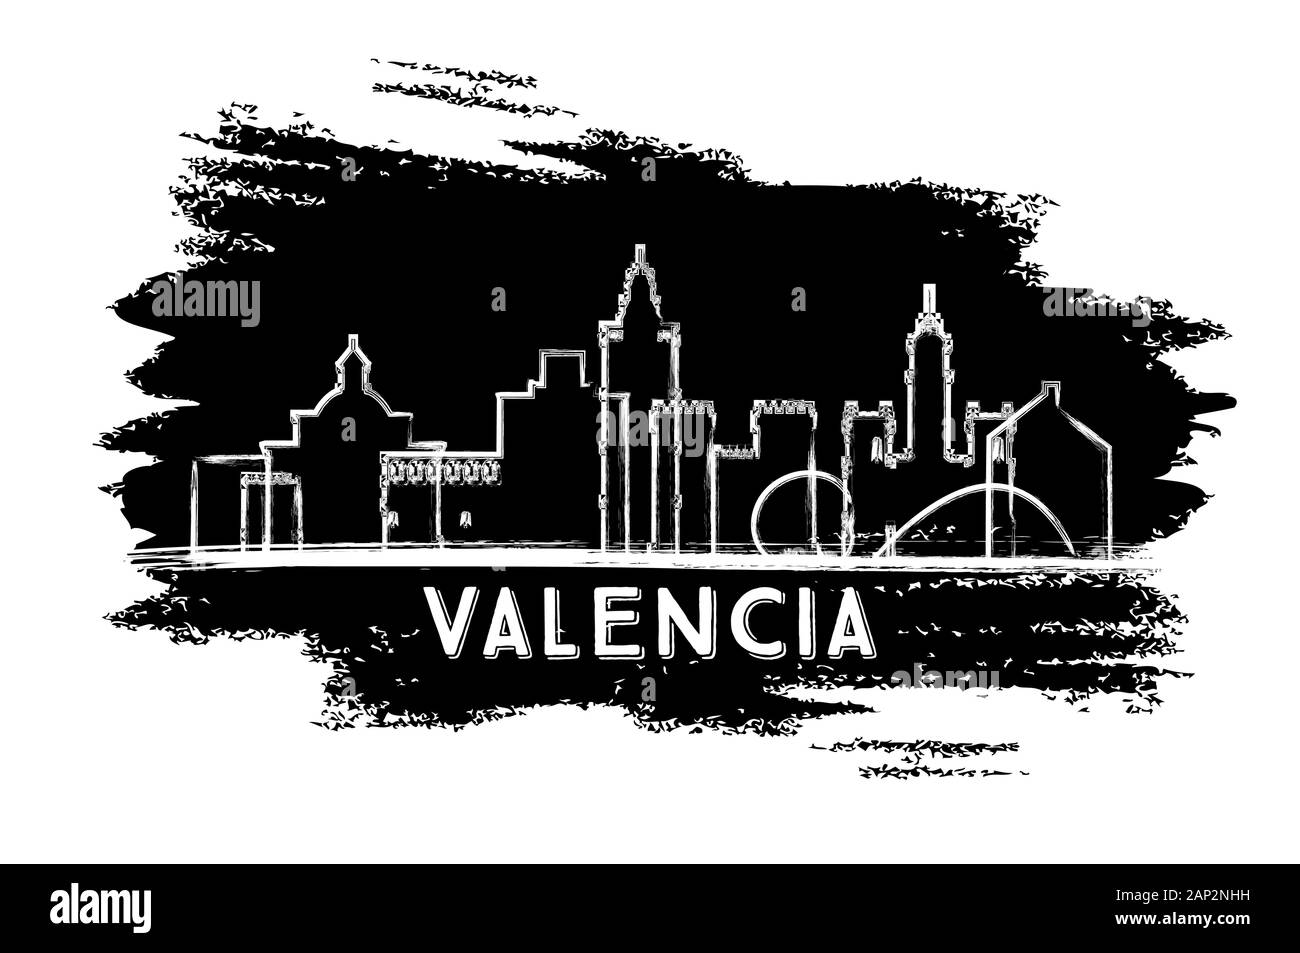 Valencia Spanien City Skyline Silhouette. Handgezeichnete Skizze. Vektorgrafiken. Business Travel and Tourism Concept mit Historischer Architektur. Stock Vektor